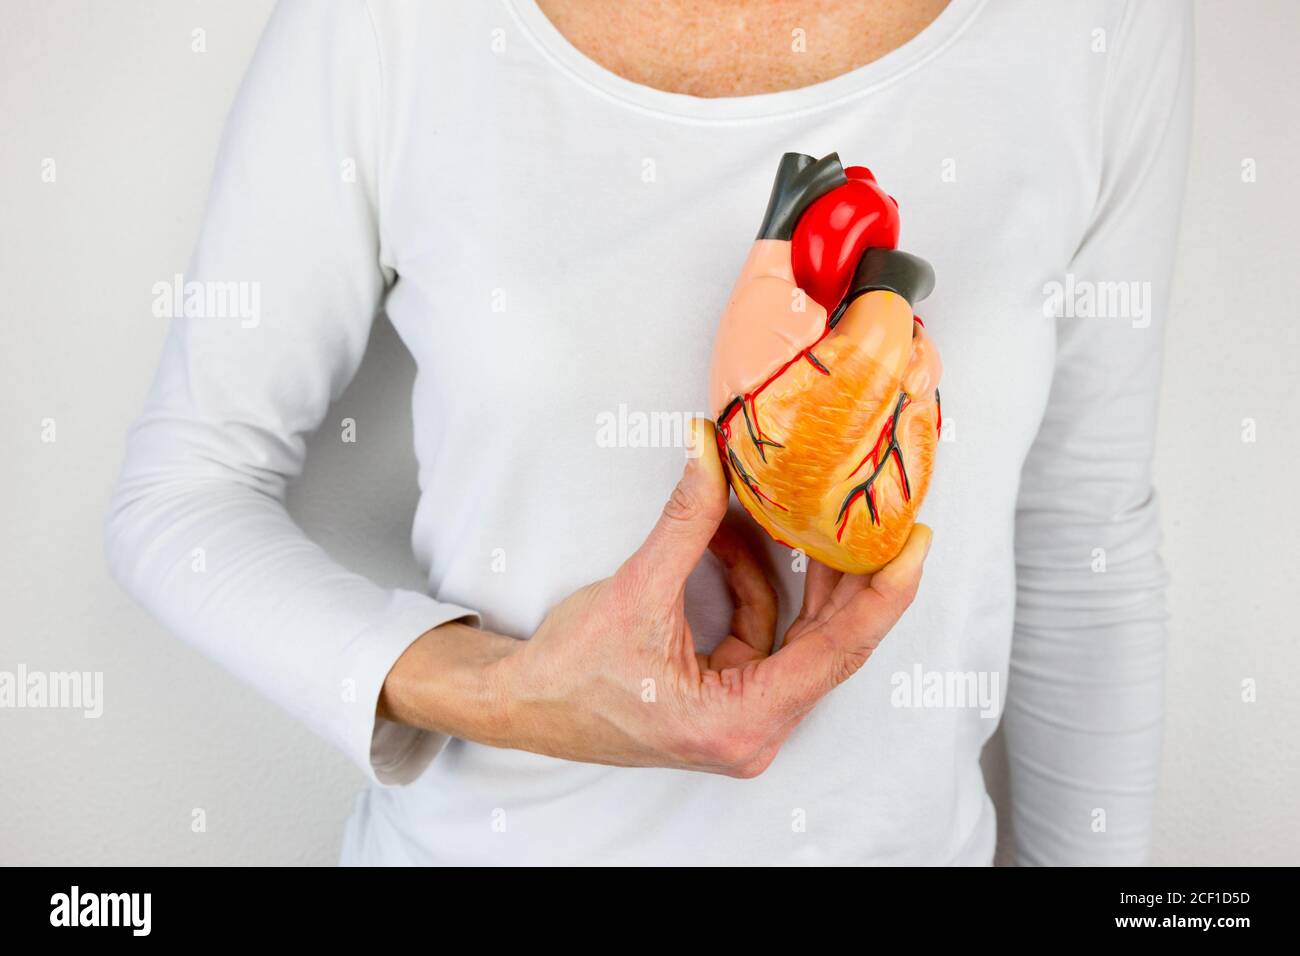 Weibliche Person hält menschliches Herzmodell auf weißem Körper Stockfoto